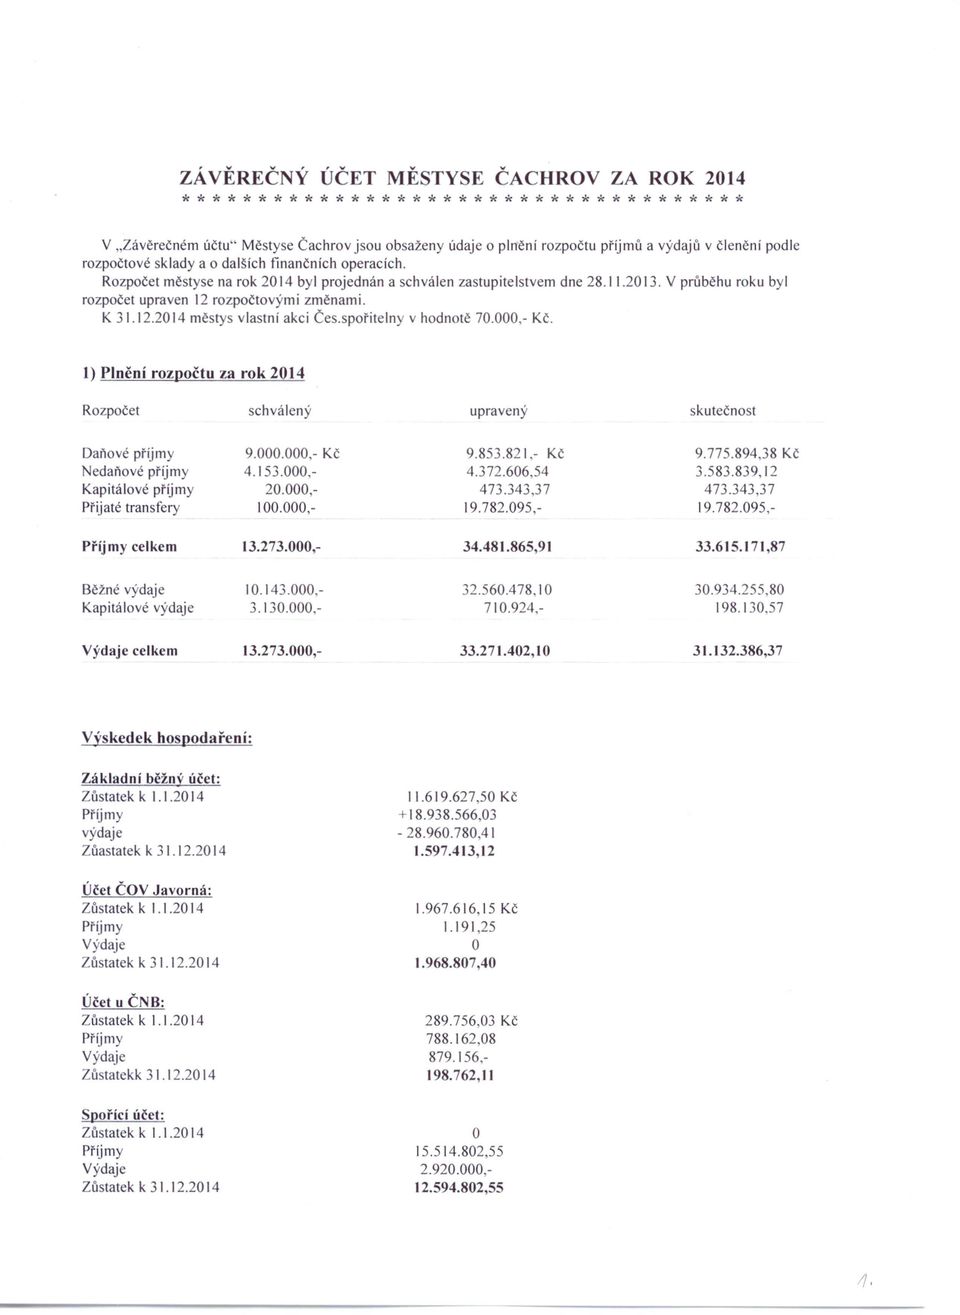 V průběhu roku byl rozpočet upraven 12 rozpočtovými změnami. K 31.12.2014 měsrys vlastní akci Čes.spořitelny v hodnotě 70.000,- Kč.